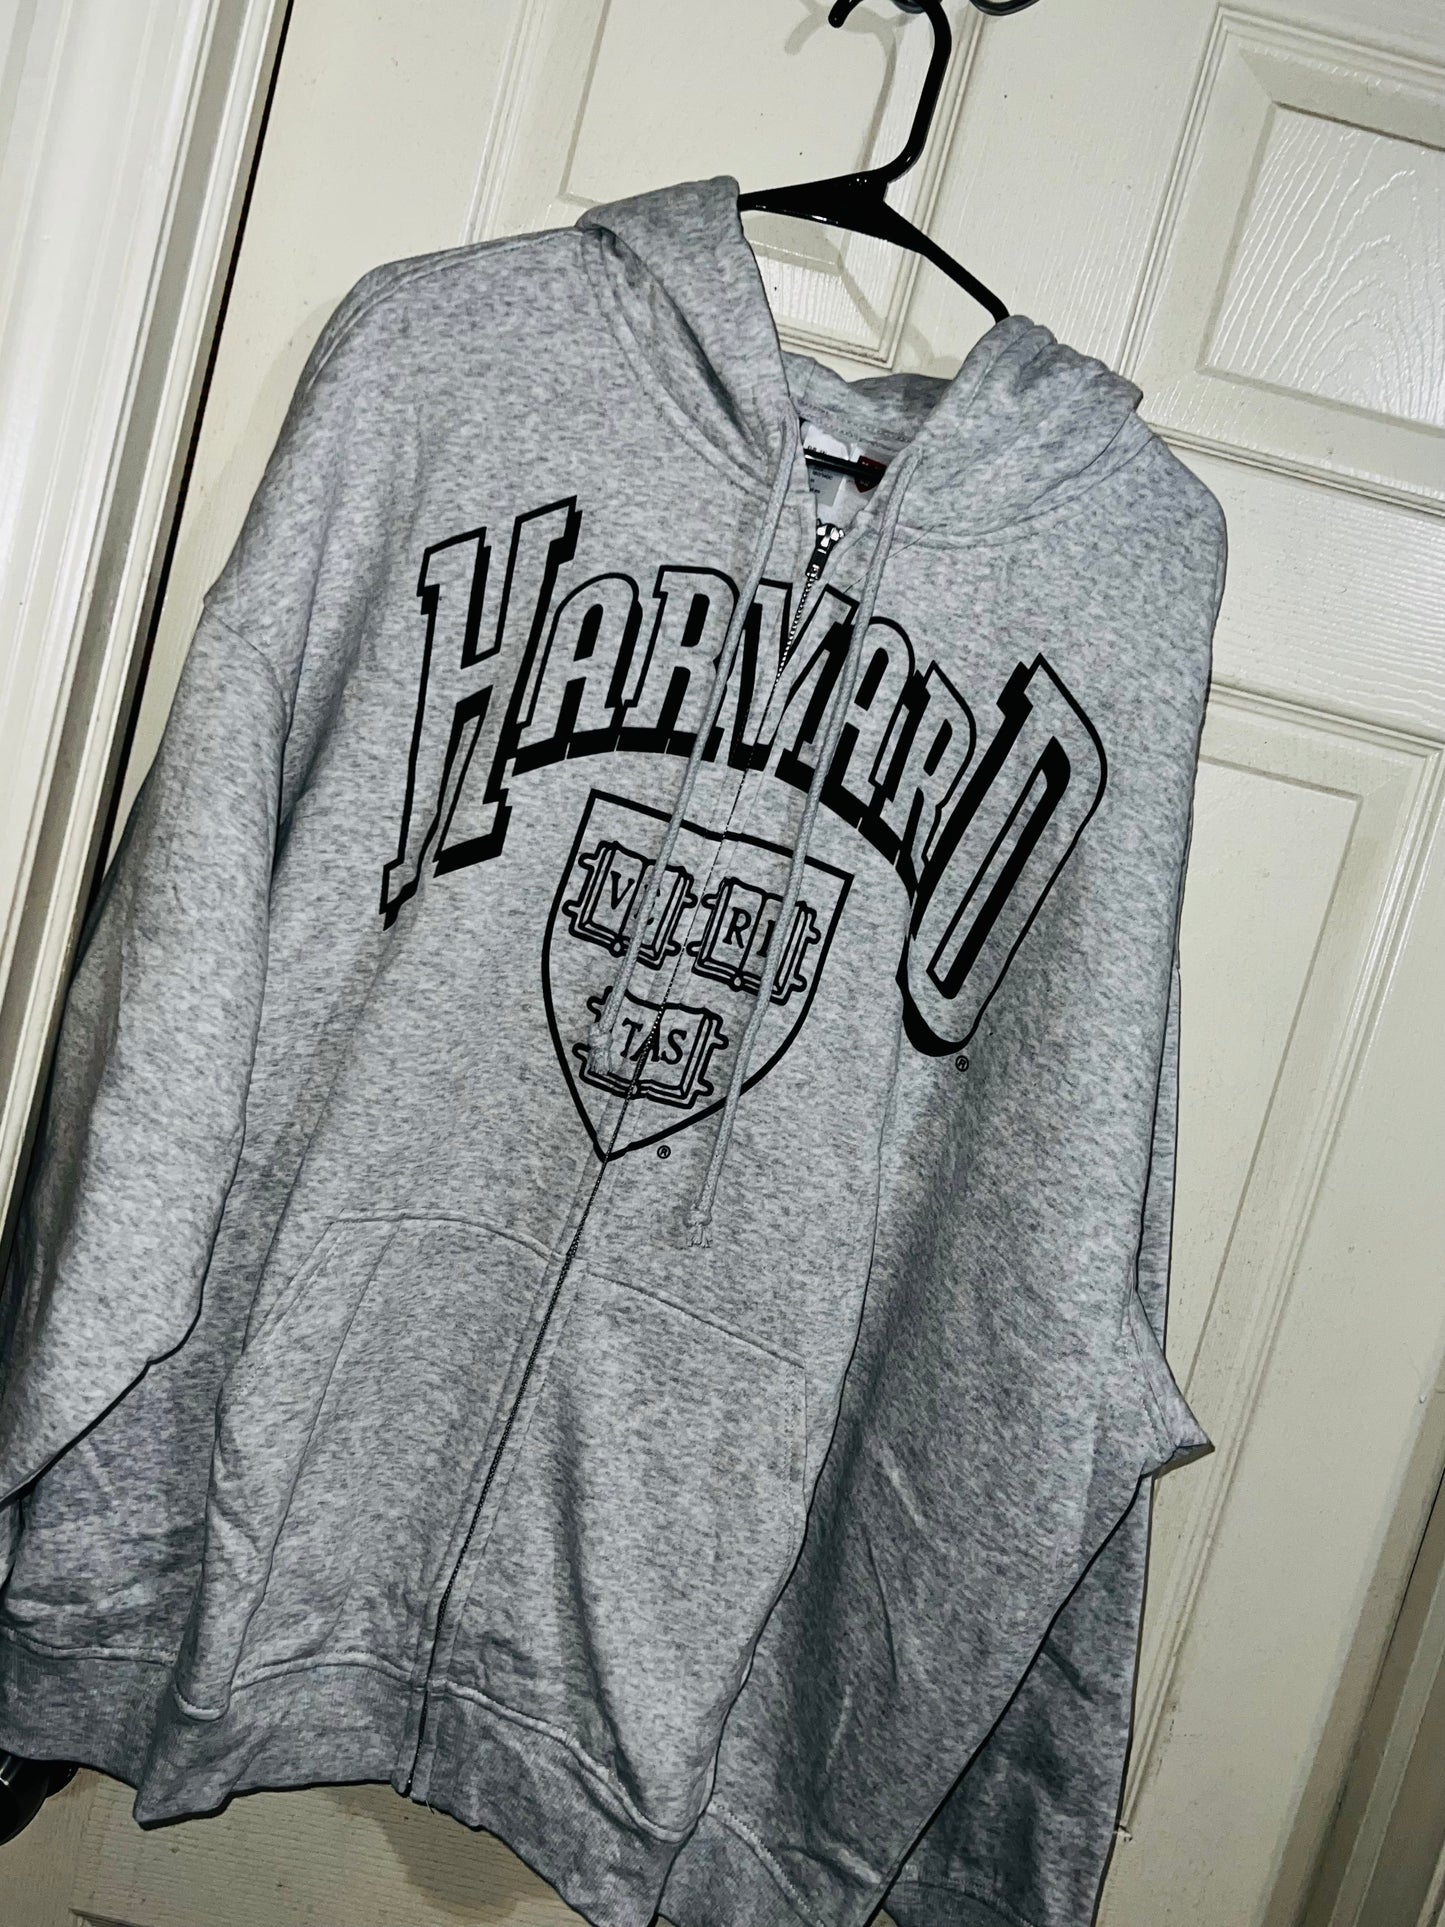 Harvard Oversized Zip Up Sweatshirt